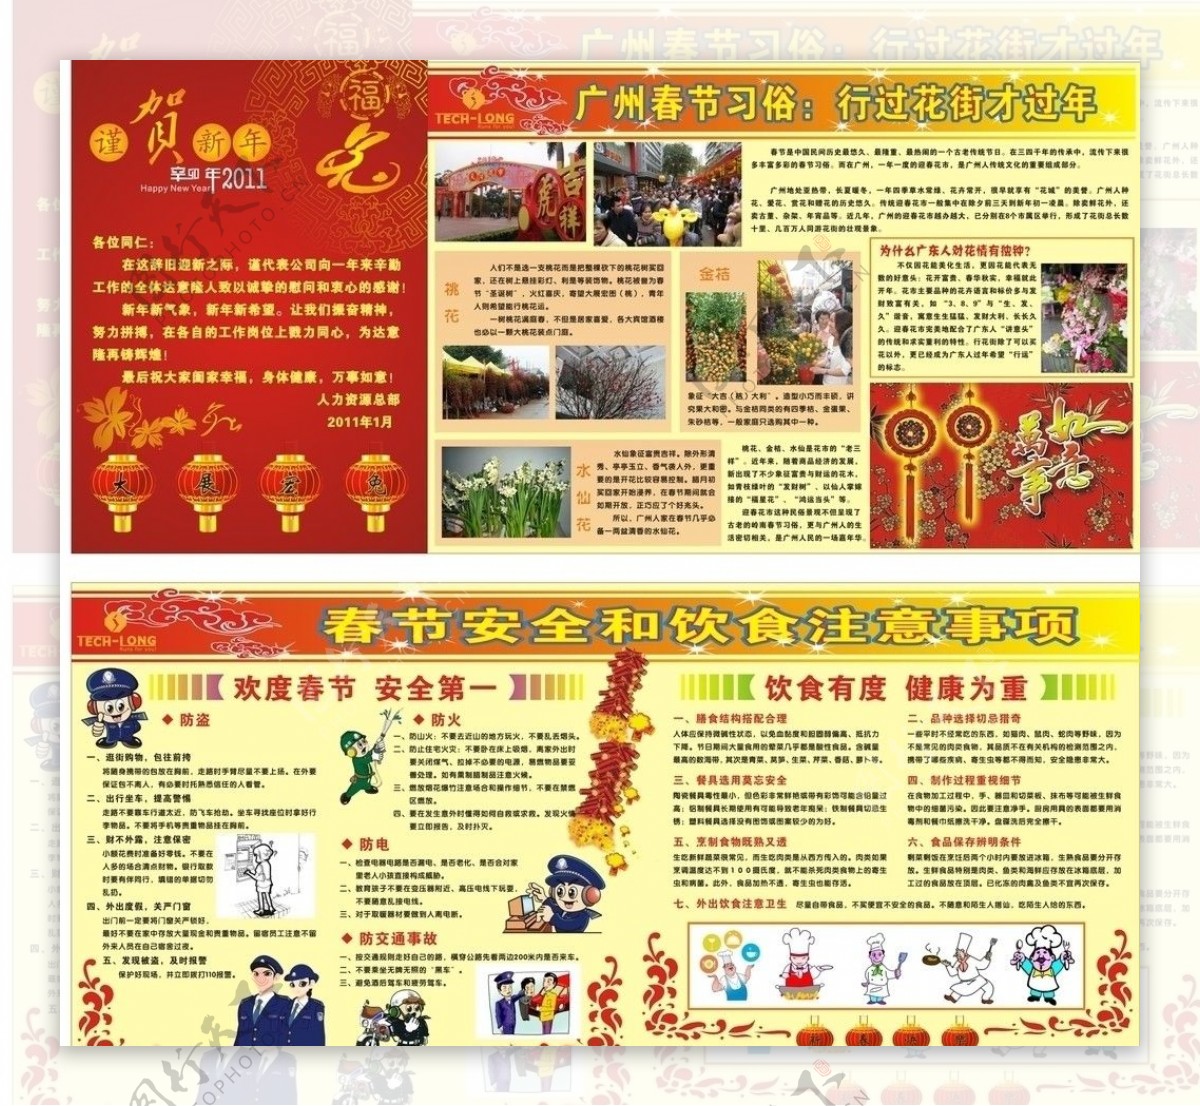 2011年恭贺新禧广州春迎春花市和春节安全饮食注意事项图片